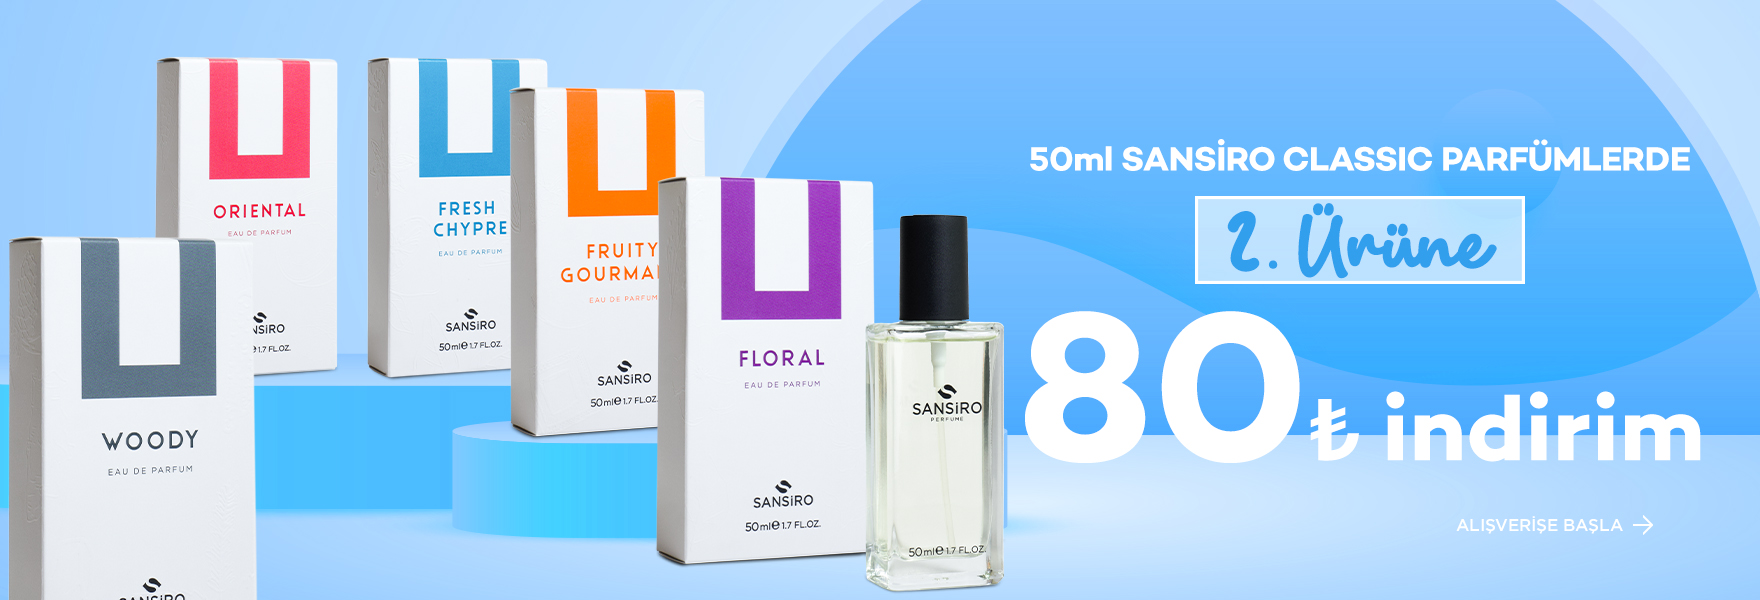 50ml Sansiro Classic Parfümlerde 2. Ürüne 80 TL İndirim